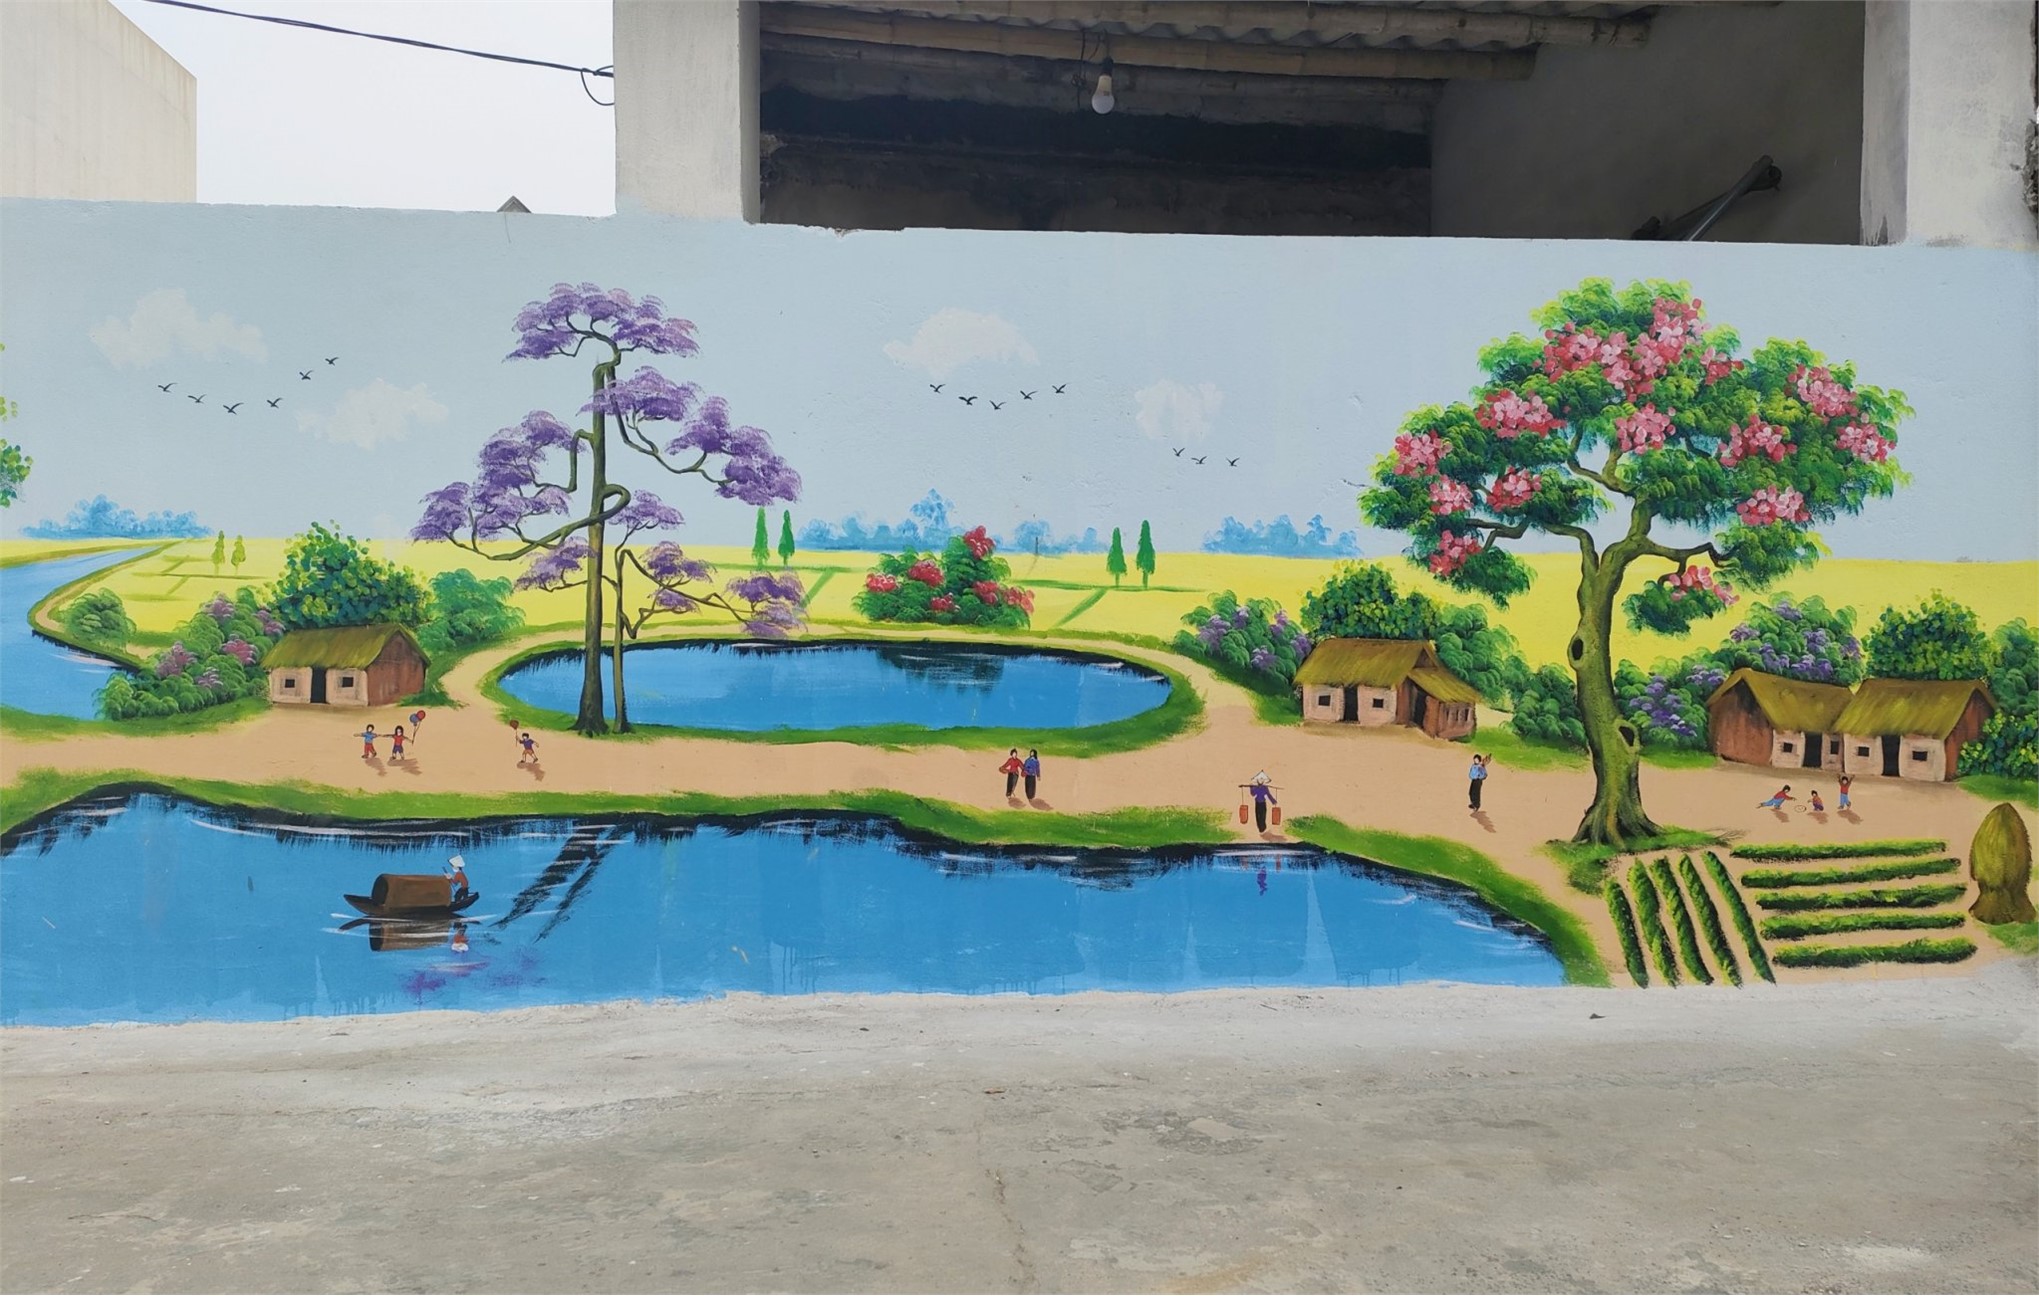 Đoàn trường Đại học Hoa Lư thực hiện công trình thanh niên Tuyến đường bích họa tại xã Gia Minh, huyện Gia Viễn